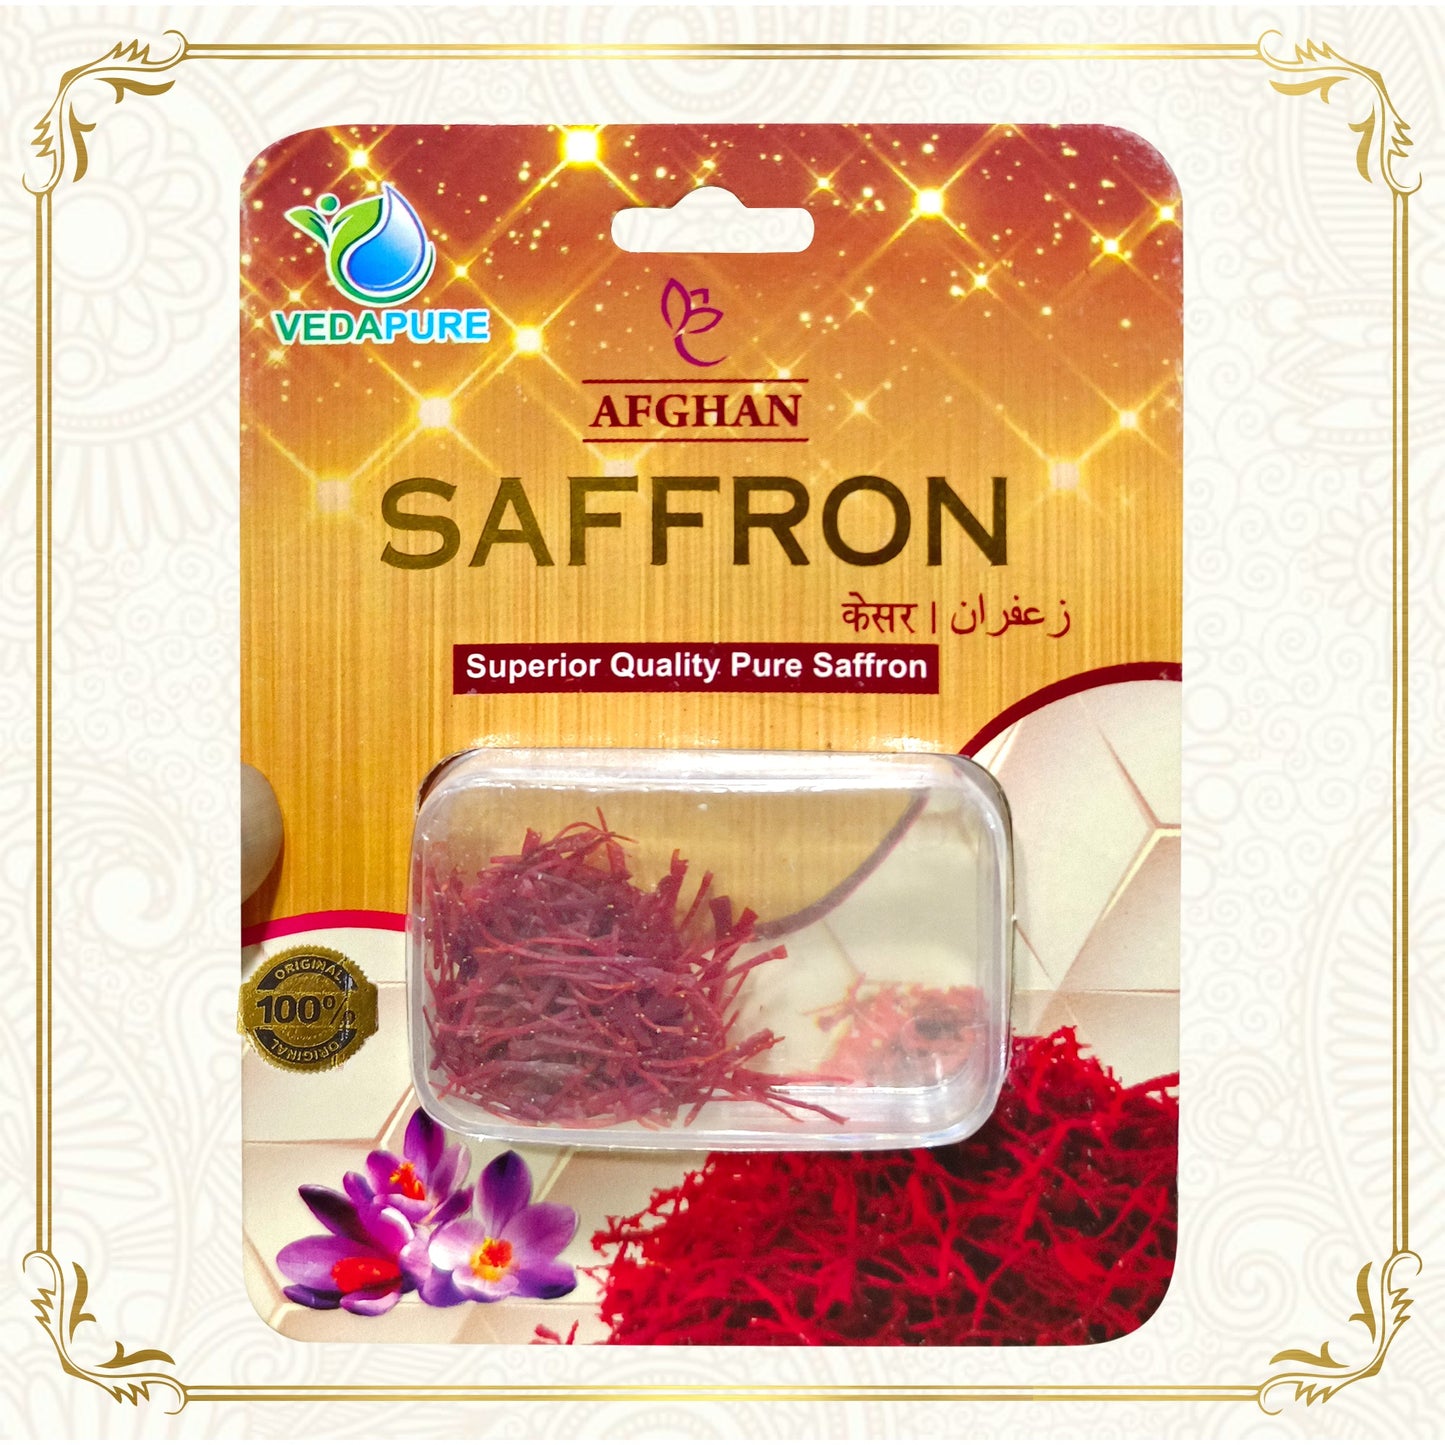 Vedapure Afghan Saffron Premium A++ Grade, Highest Quality-1gram Vedapure Naturals